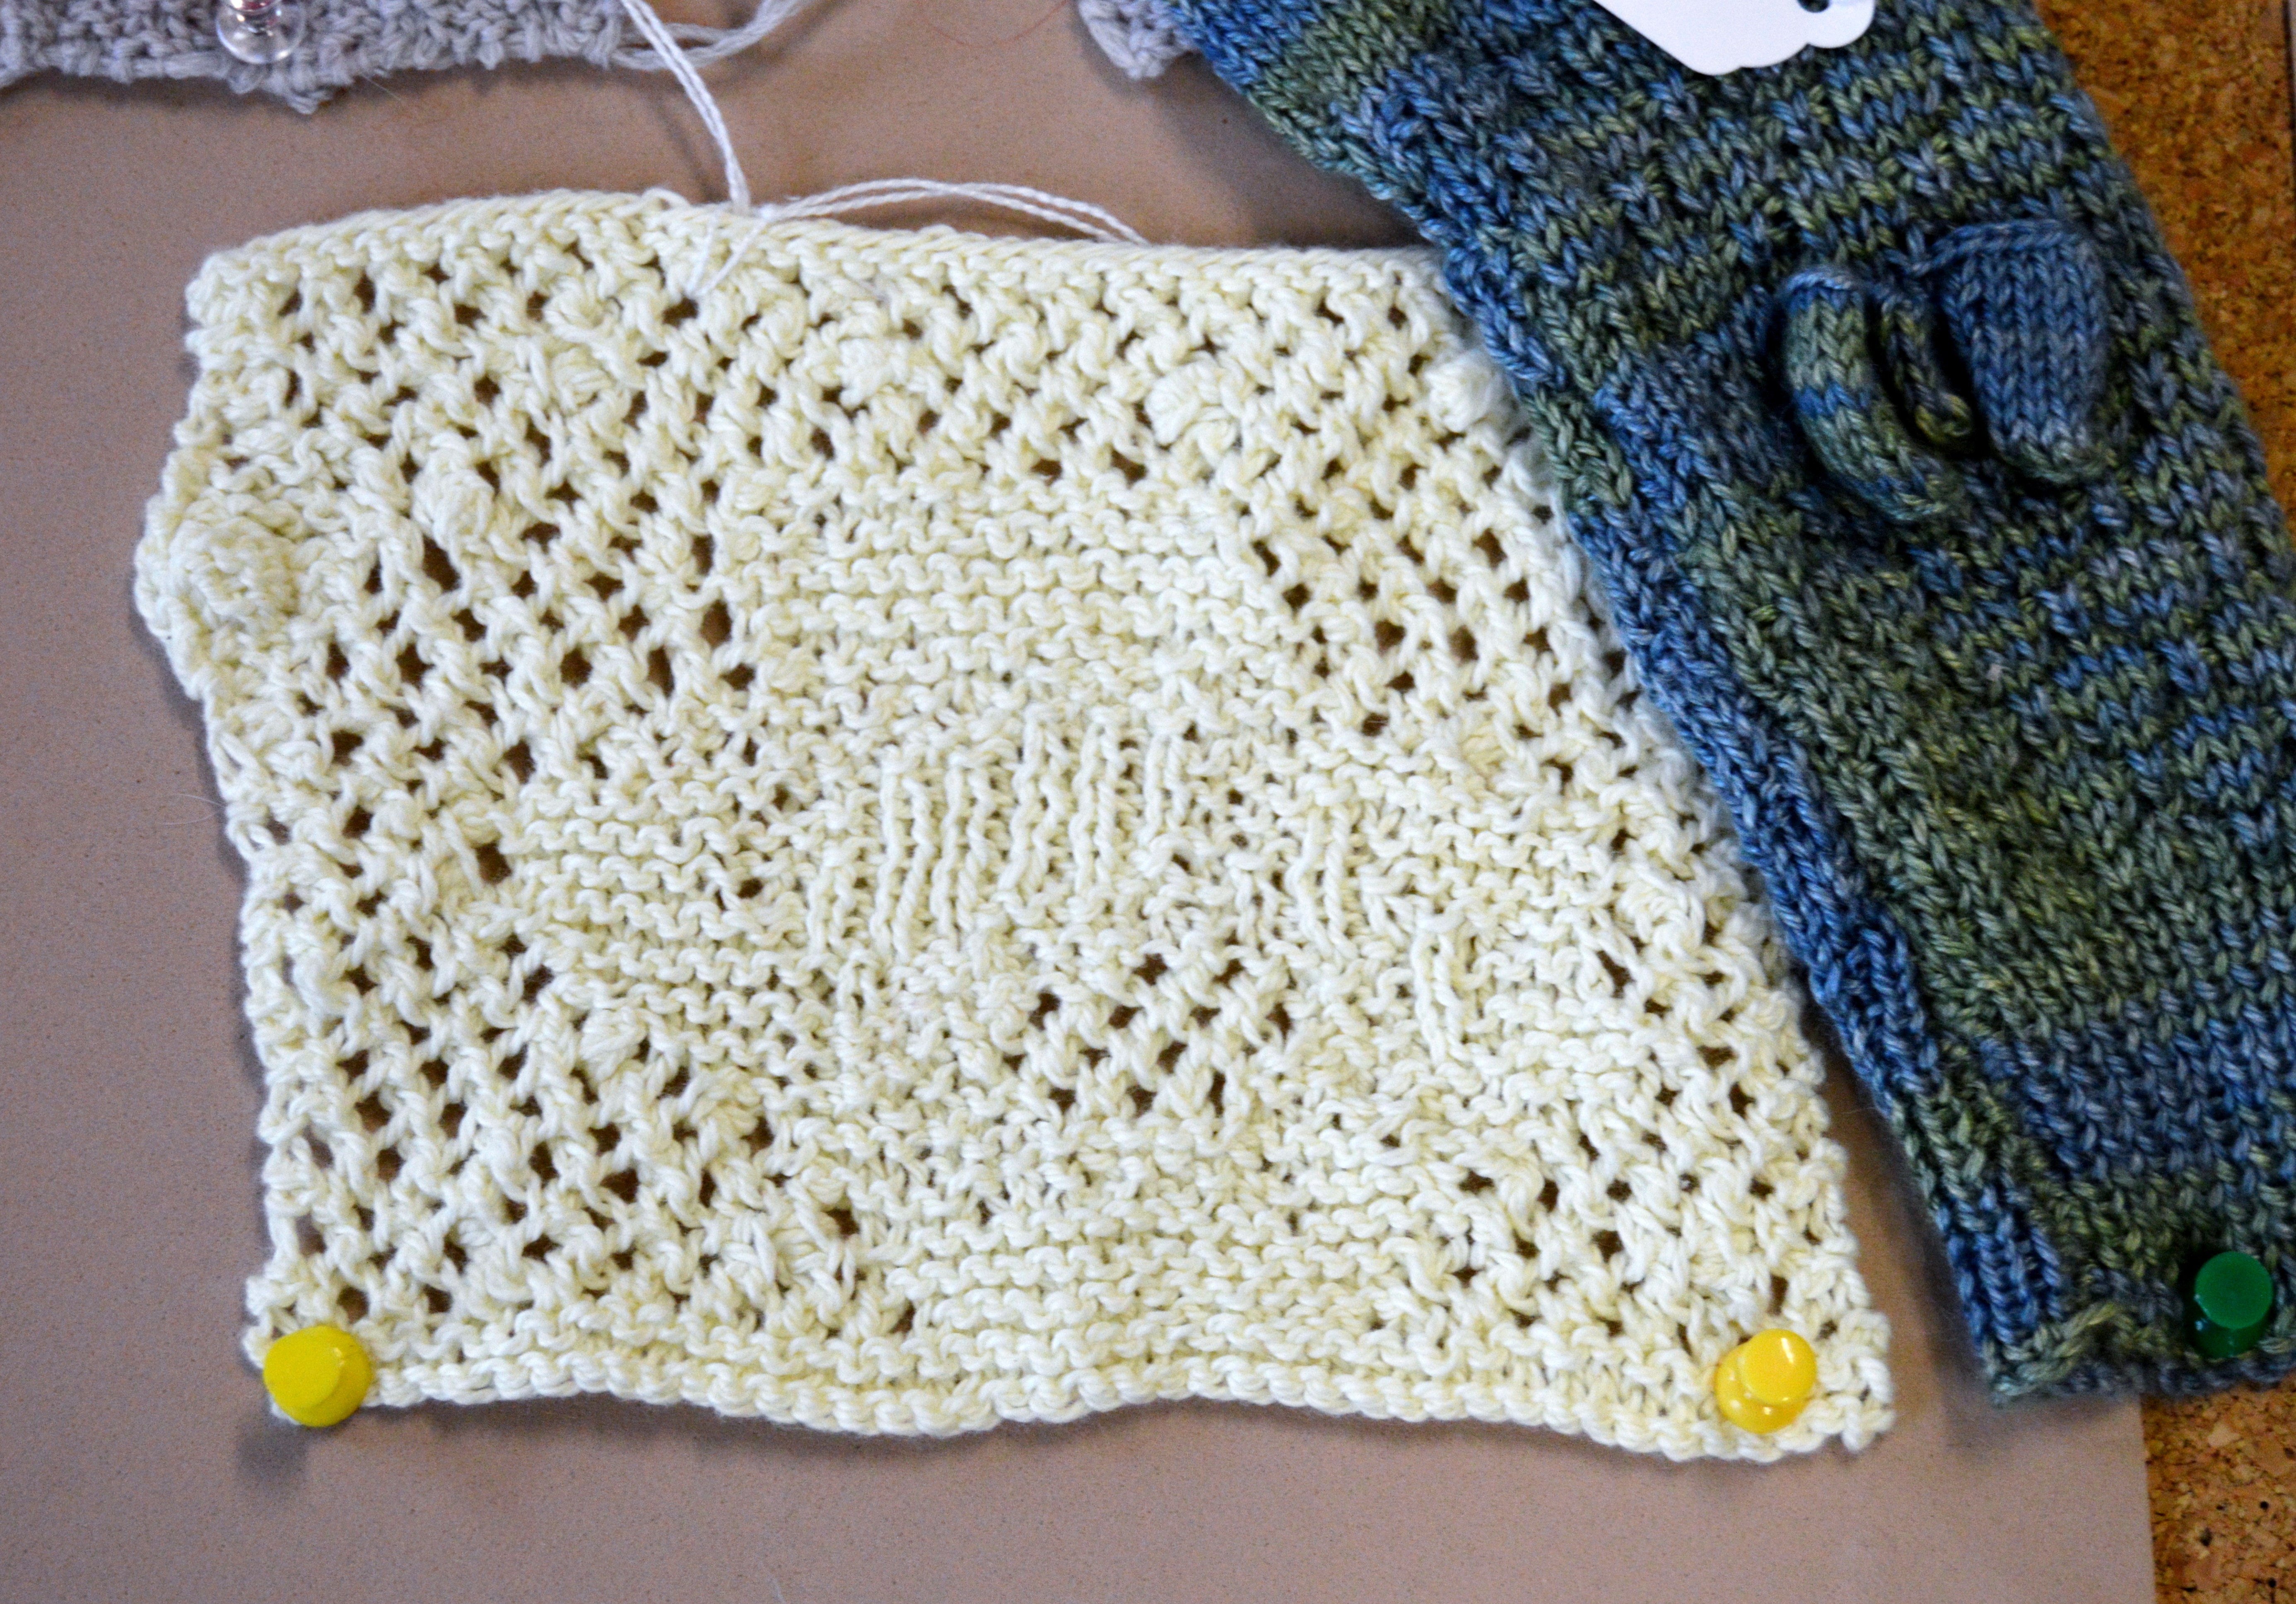 samples of knitting designs by Kay Kelloway